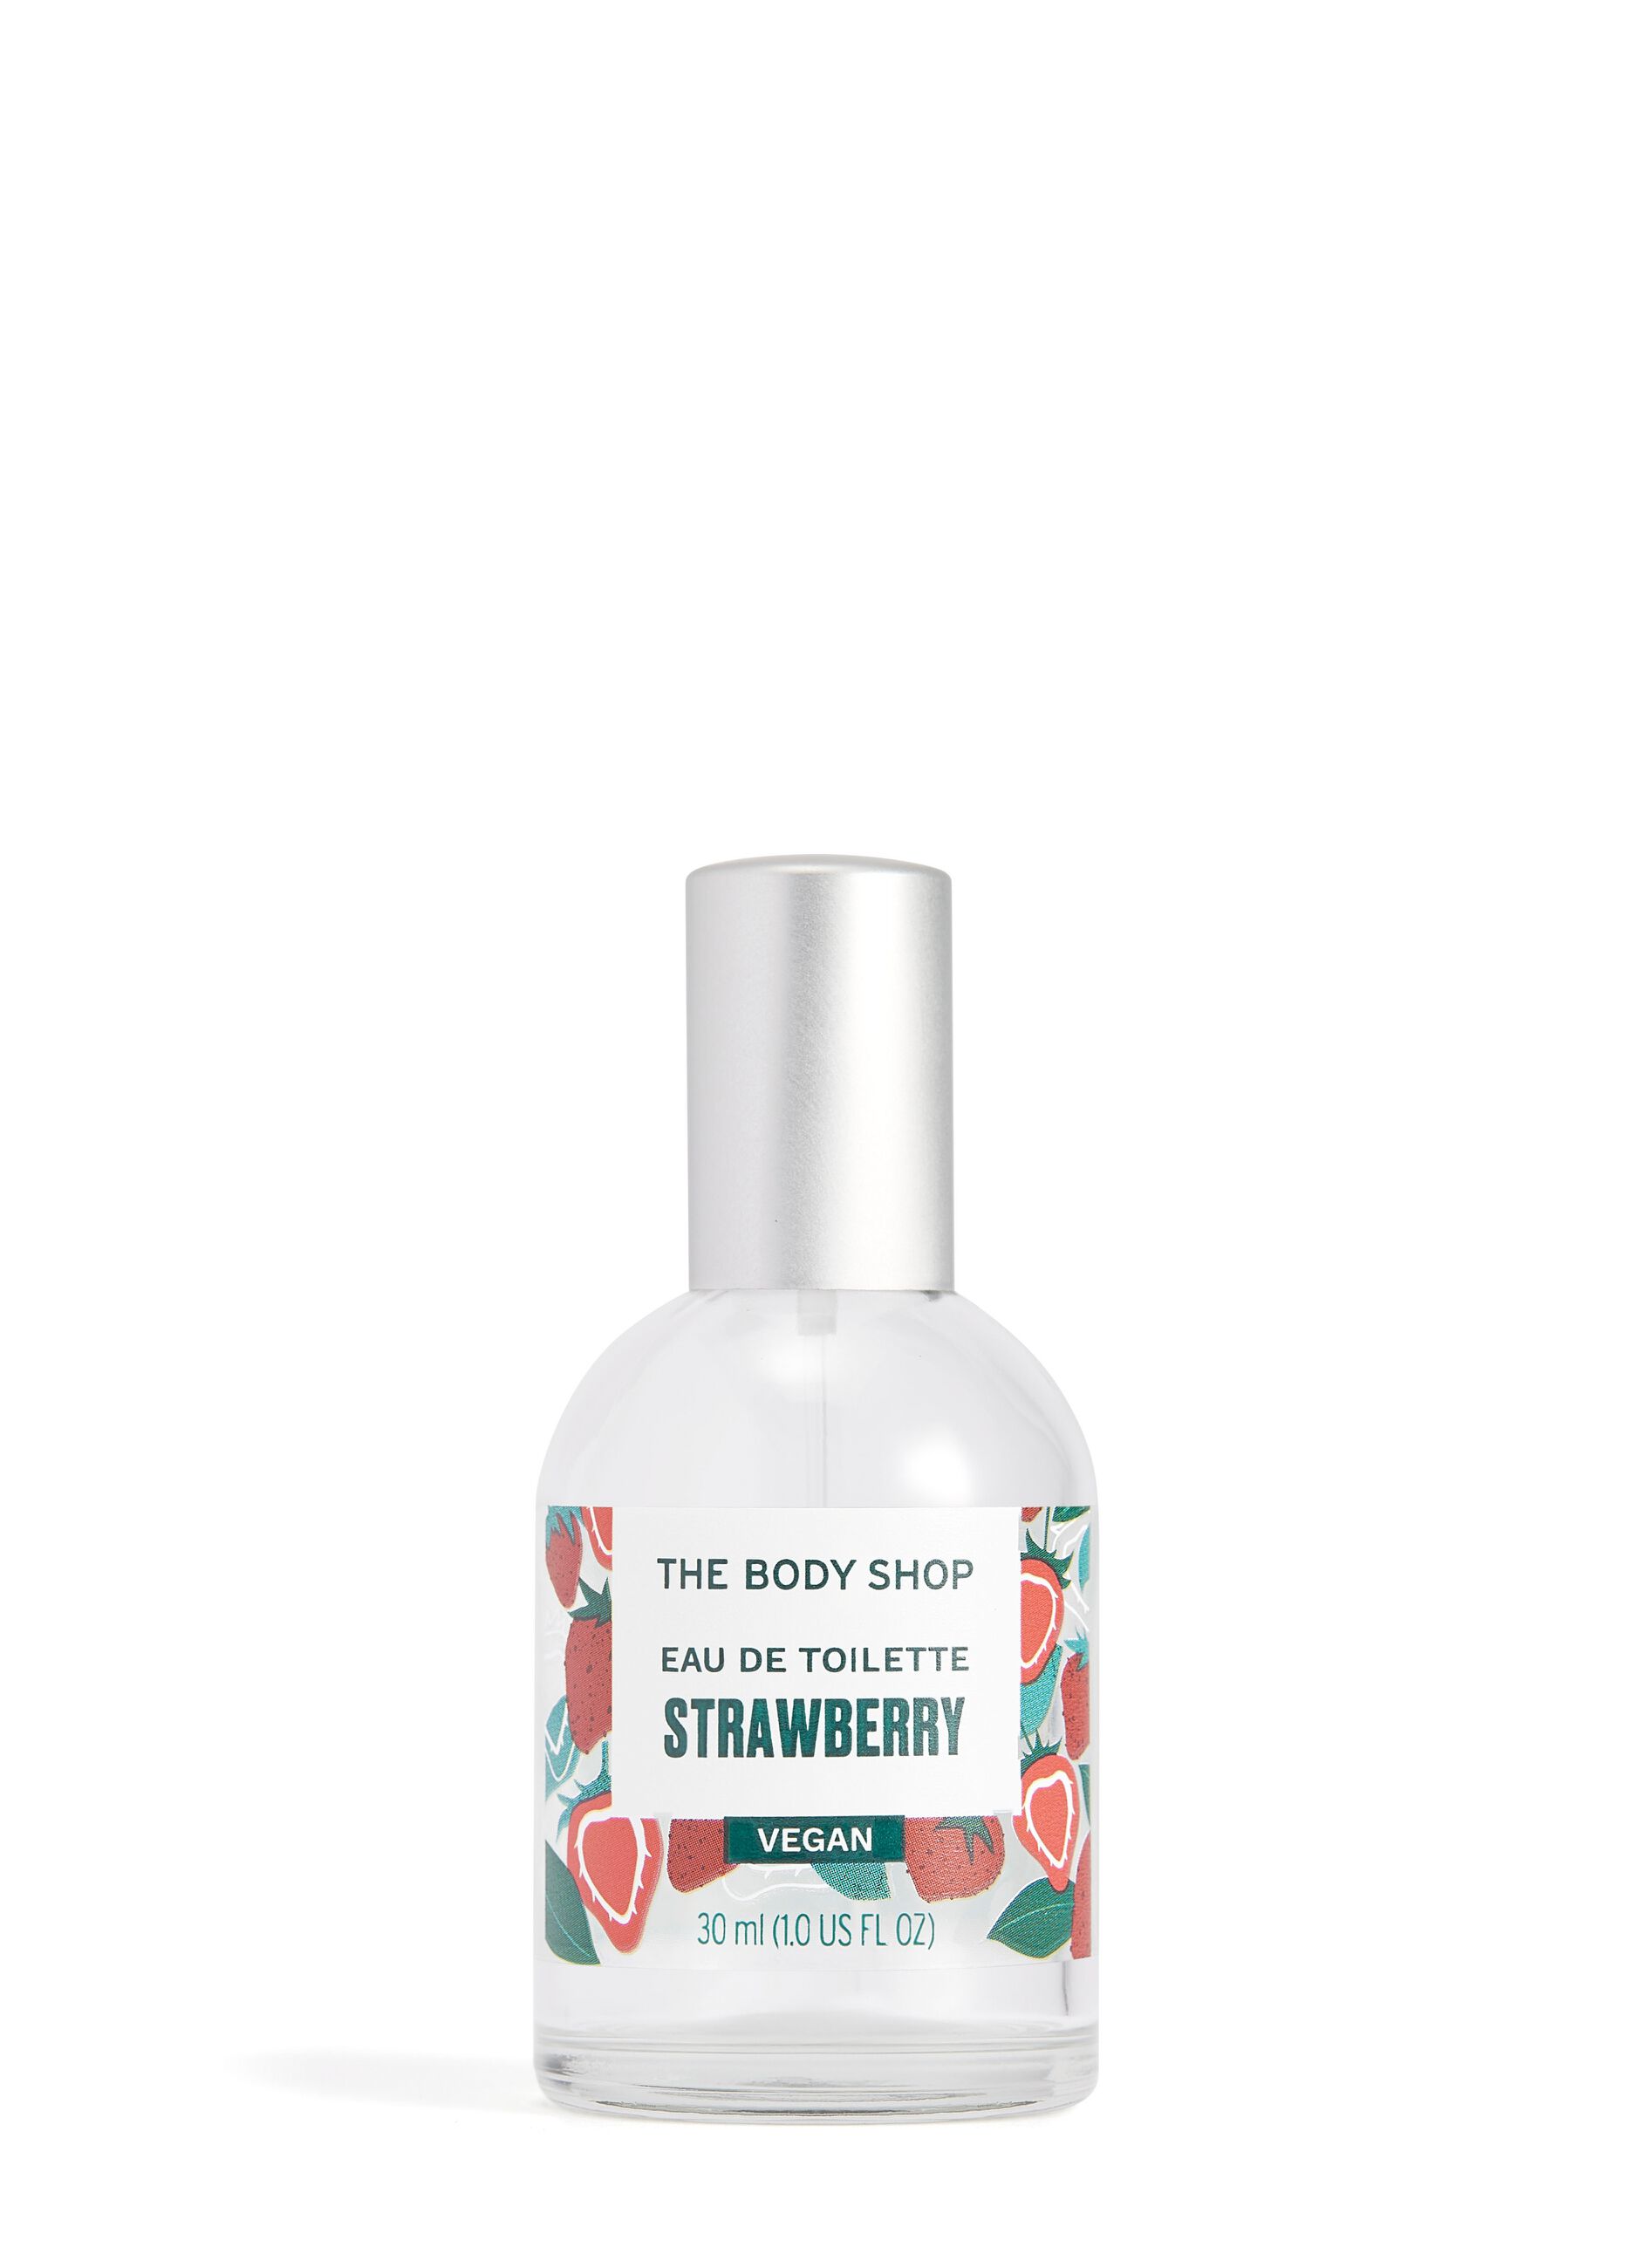 The Body Shop strawberry Eau de Toilette 30ml